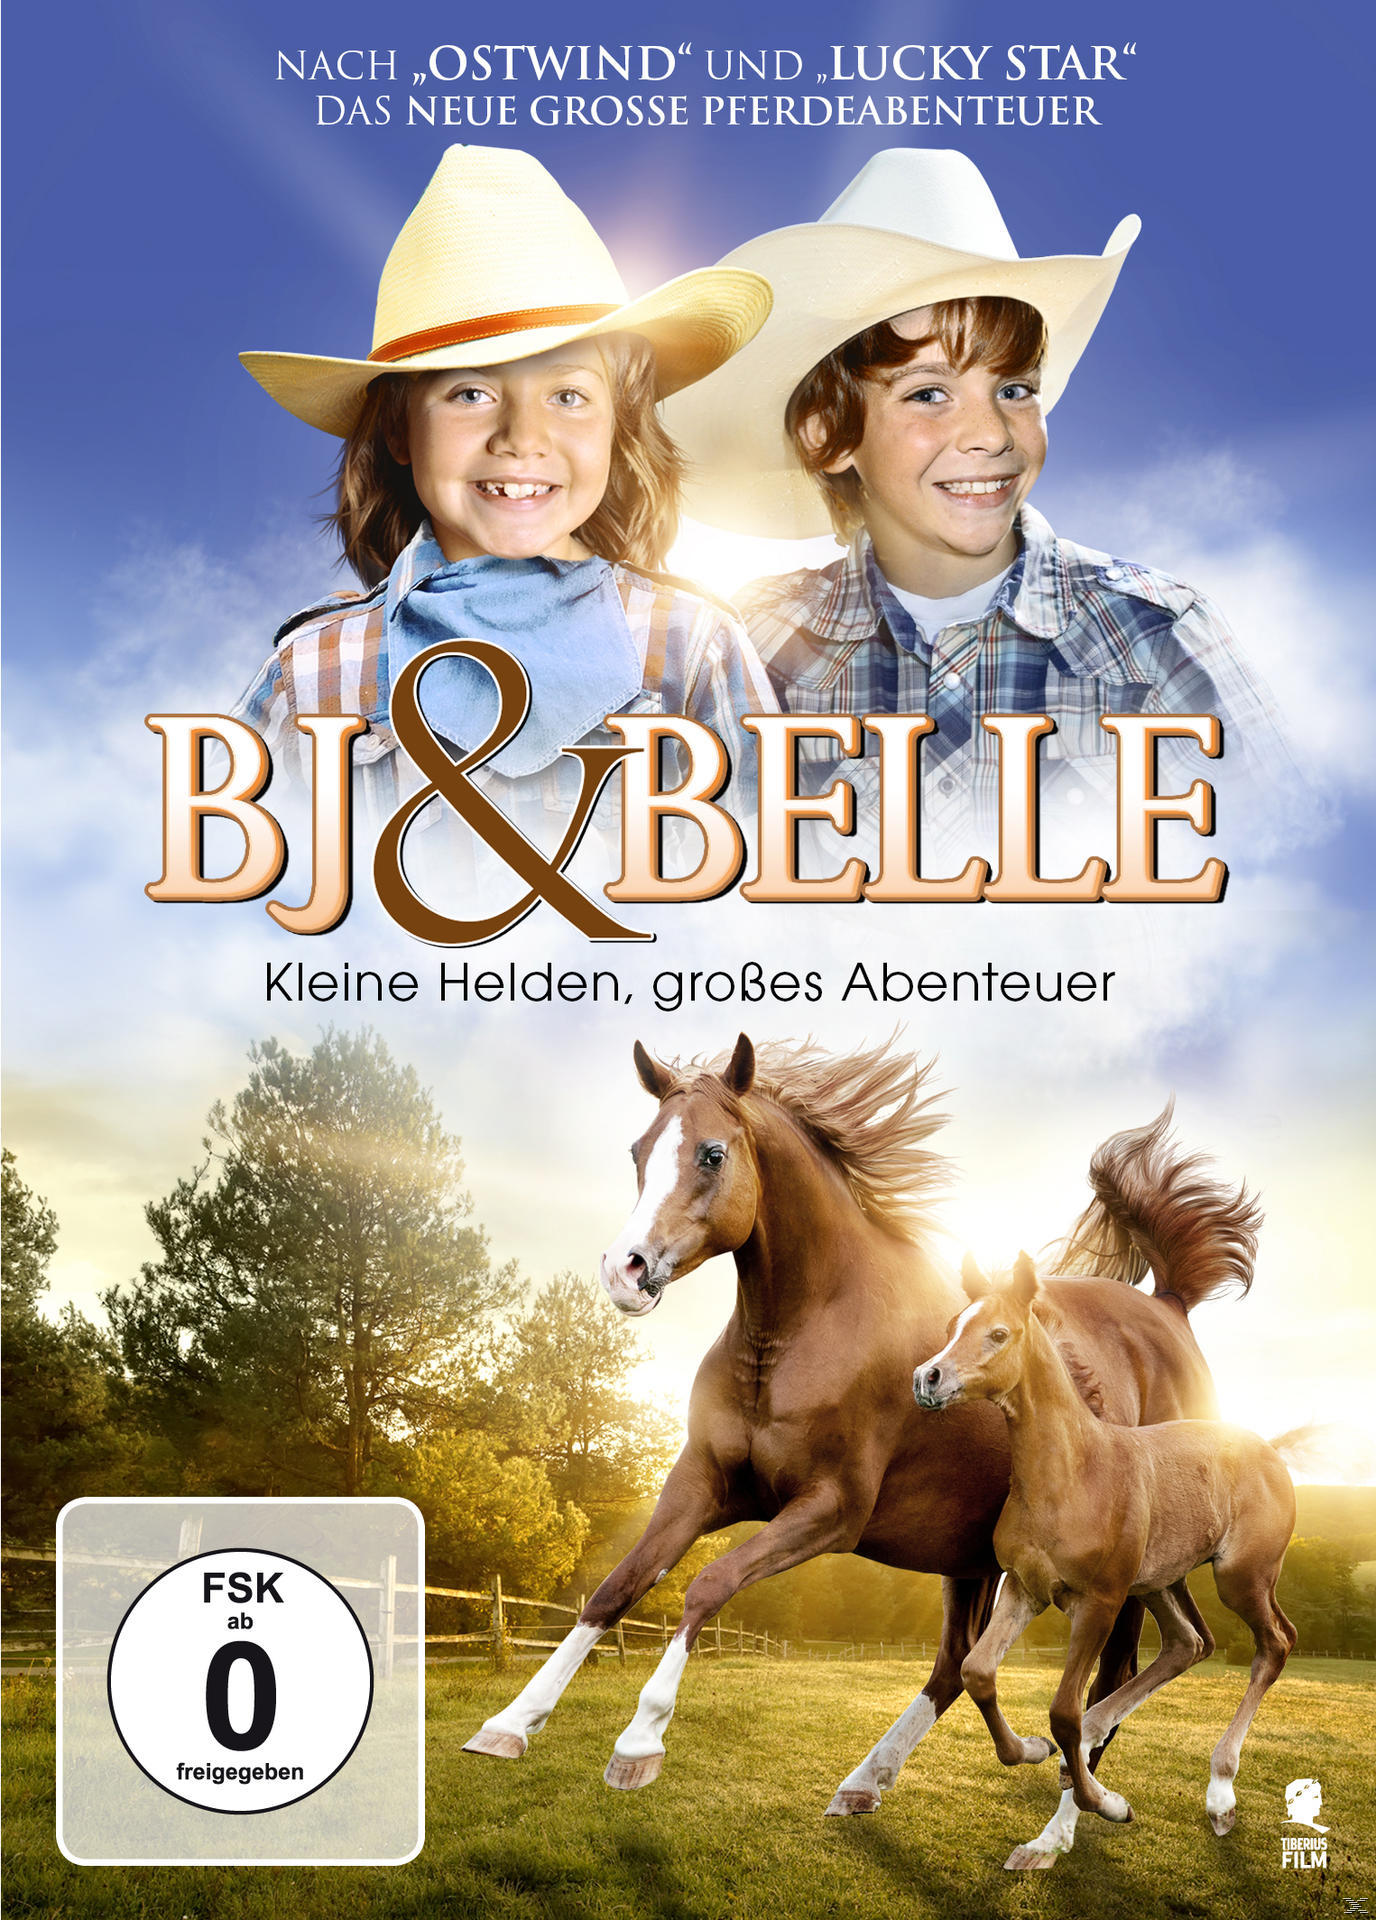 BJ & Belle – kleine große Abenteuer Helden, DVD